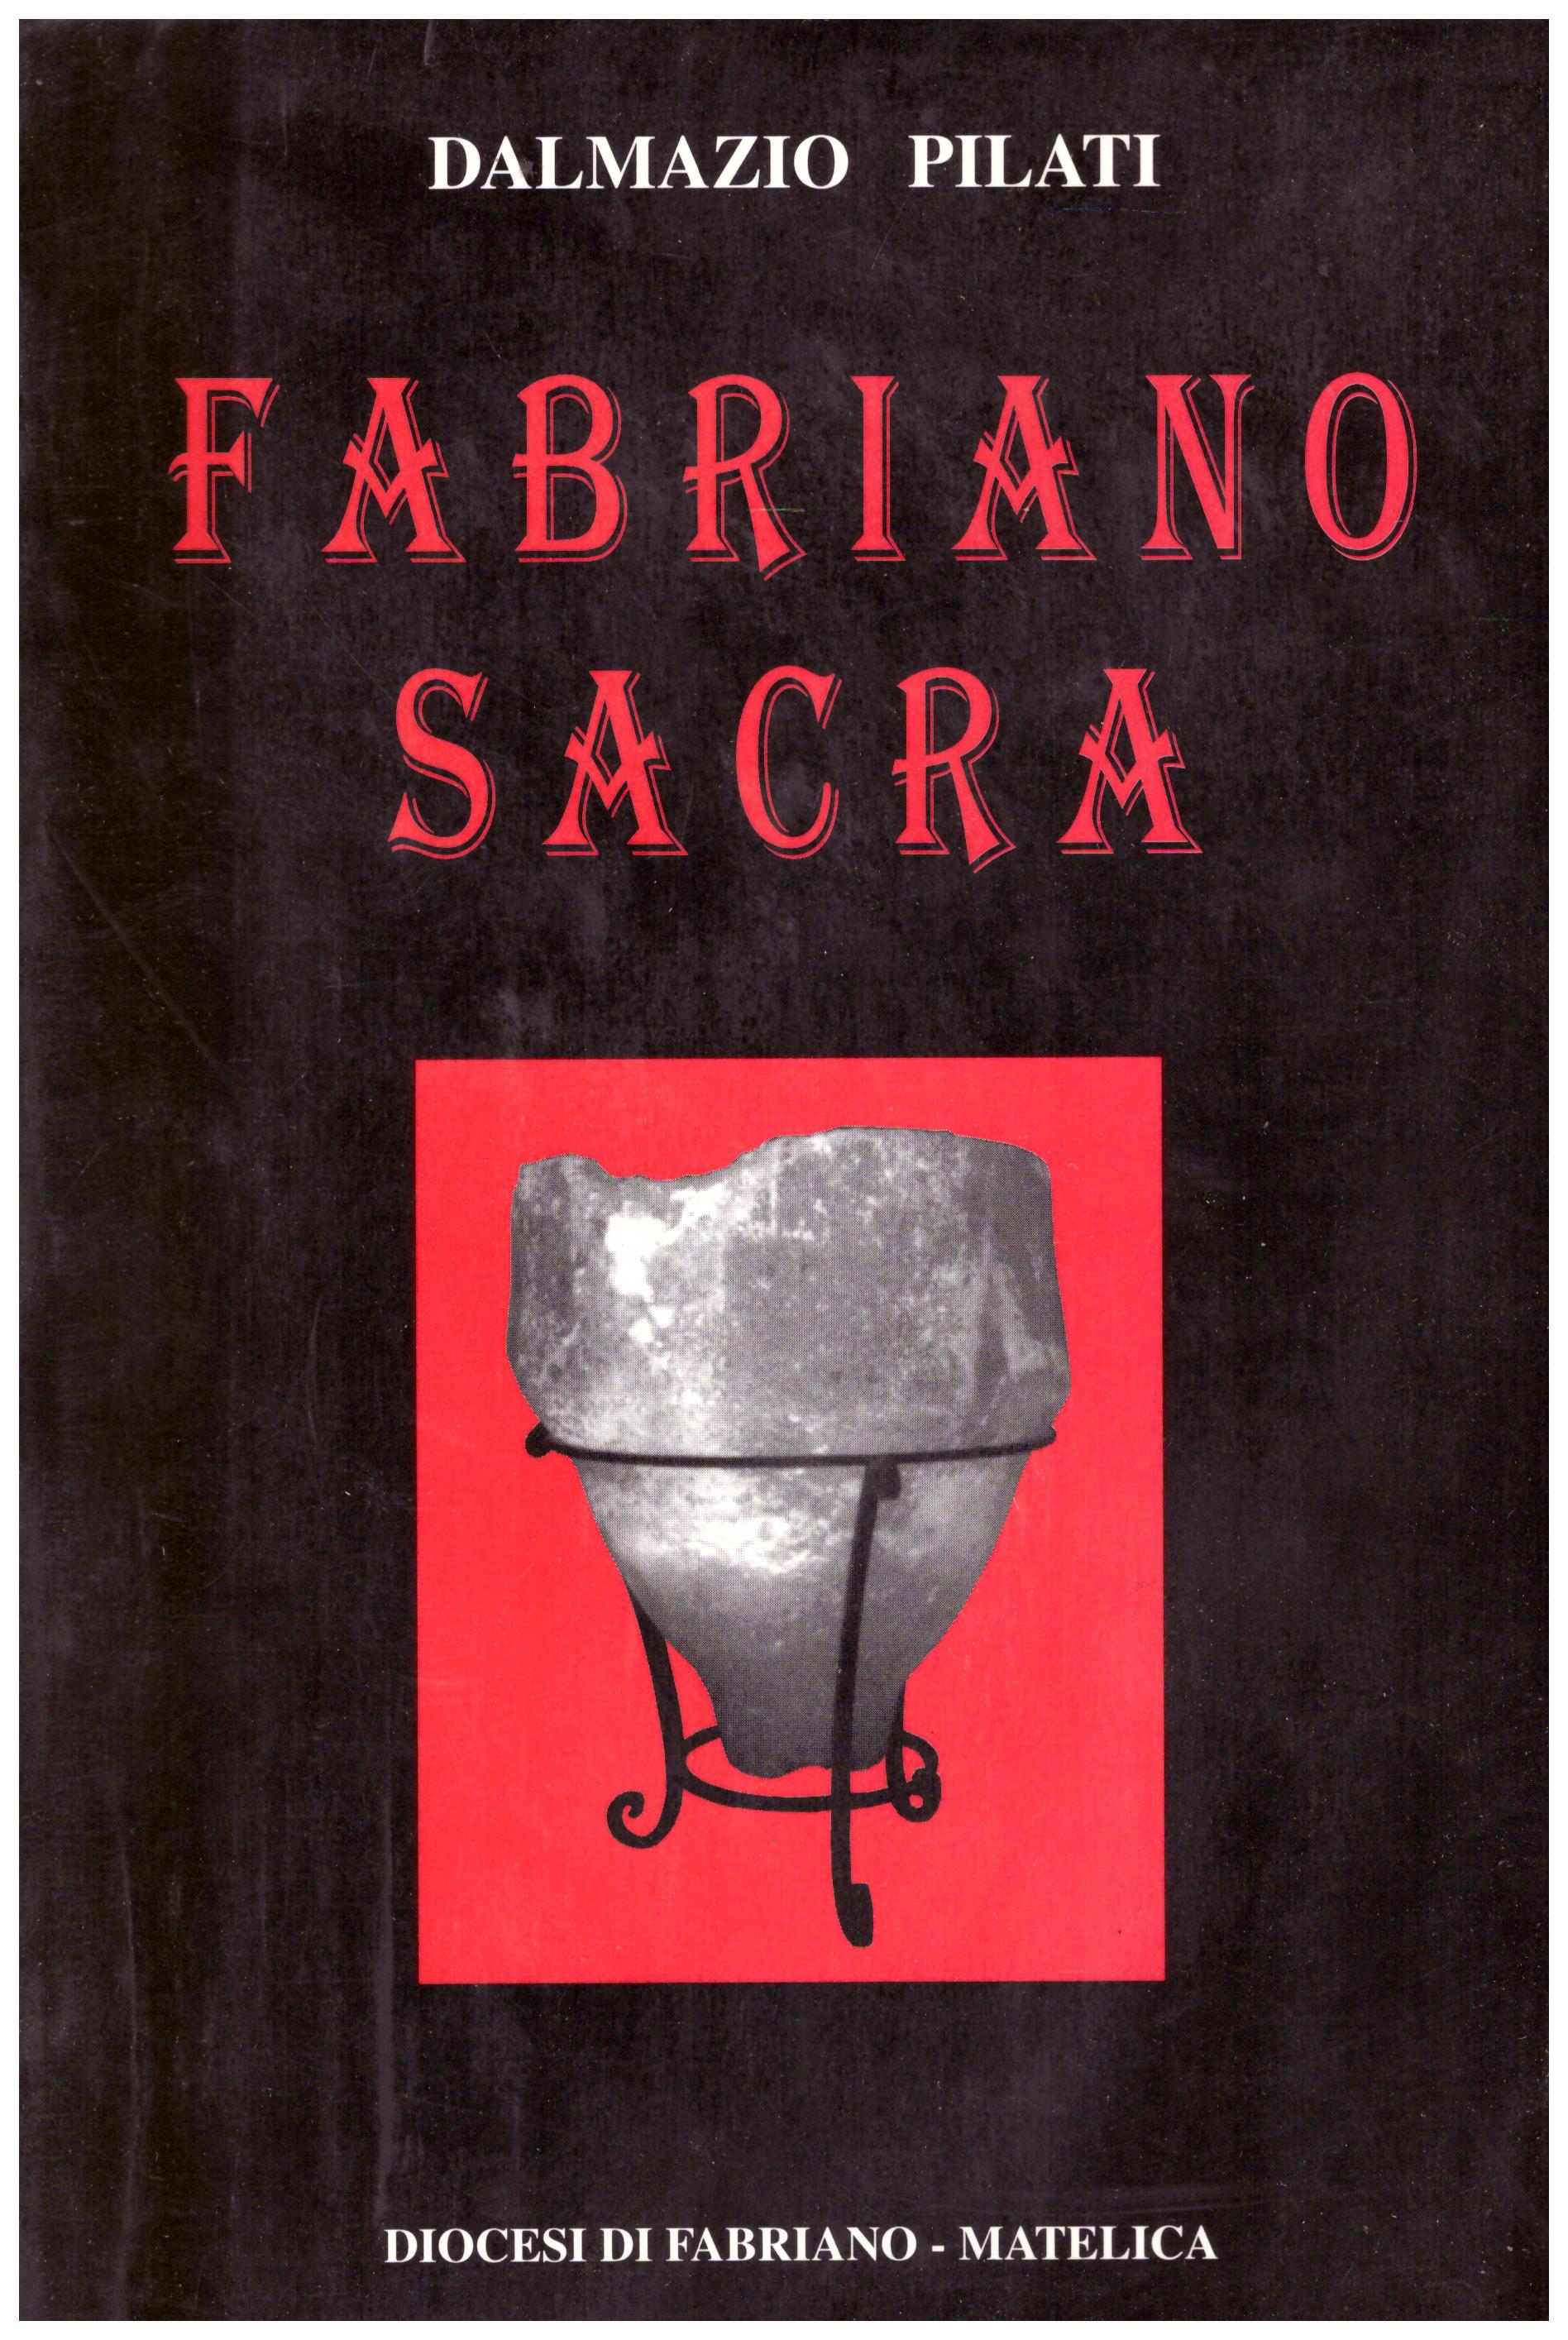 Titolo: Fabriano sacra Autore : Dalmazio Pilati  Editore: cartotecnica editoriale fabrianese 1999